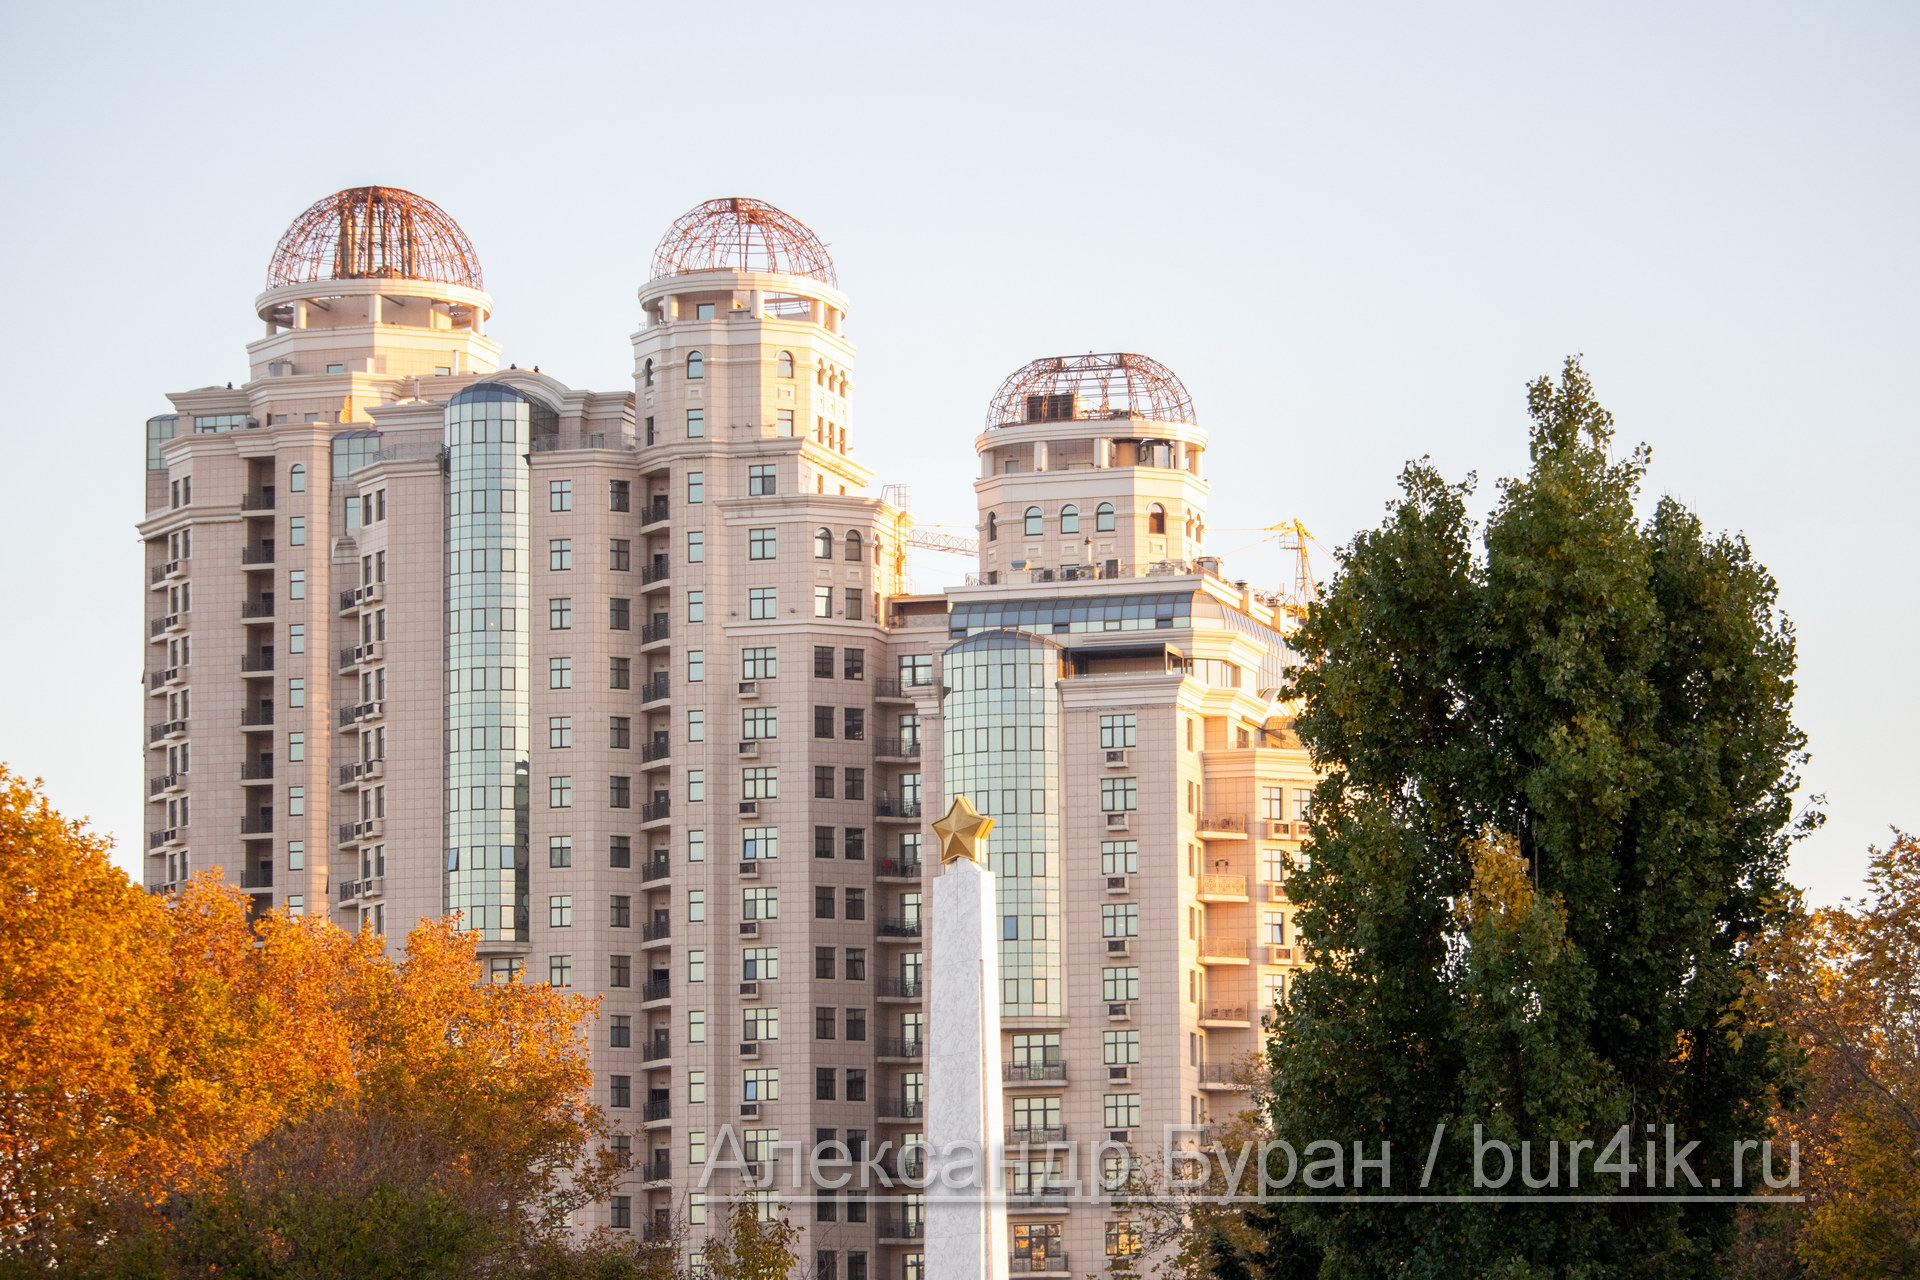 Три высотных жилых здания - Вид из парка - Украина, Одесса, 17,10,2019